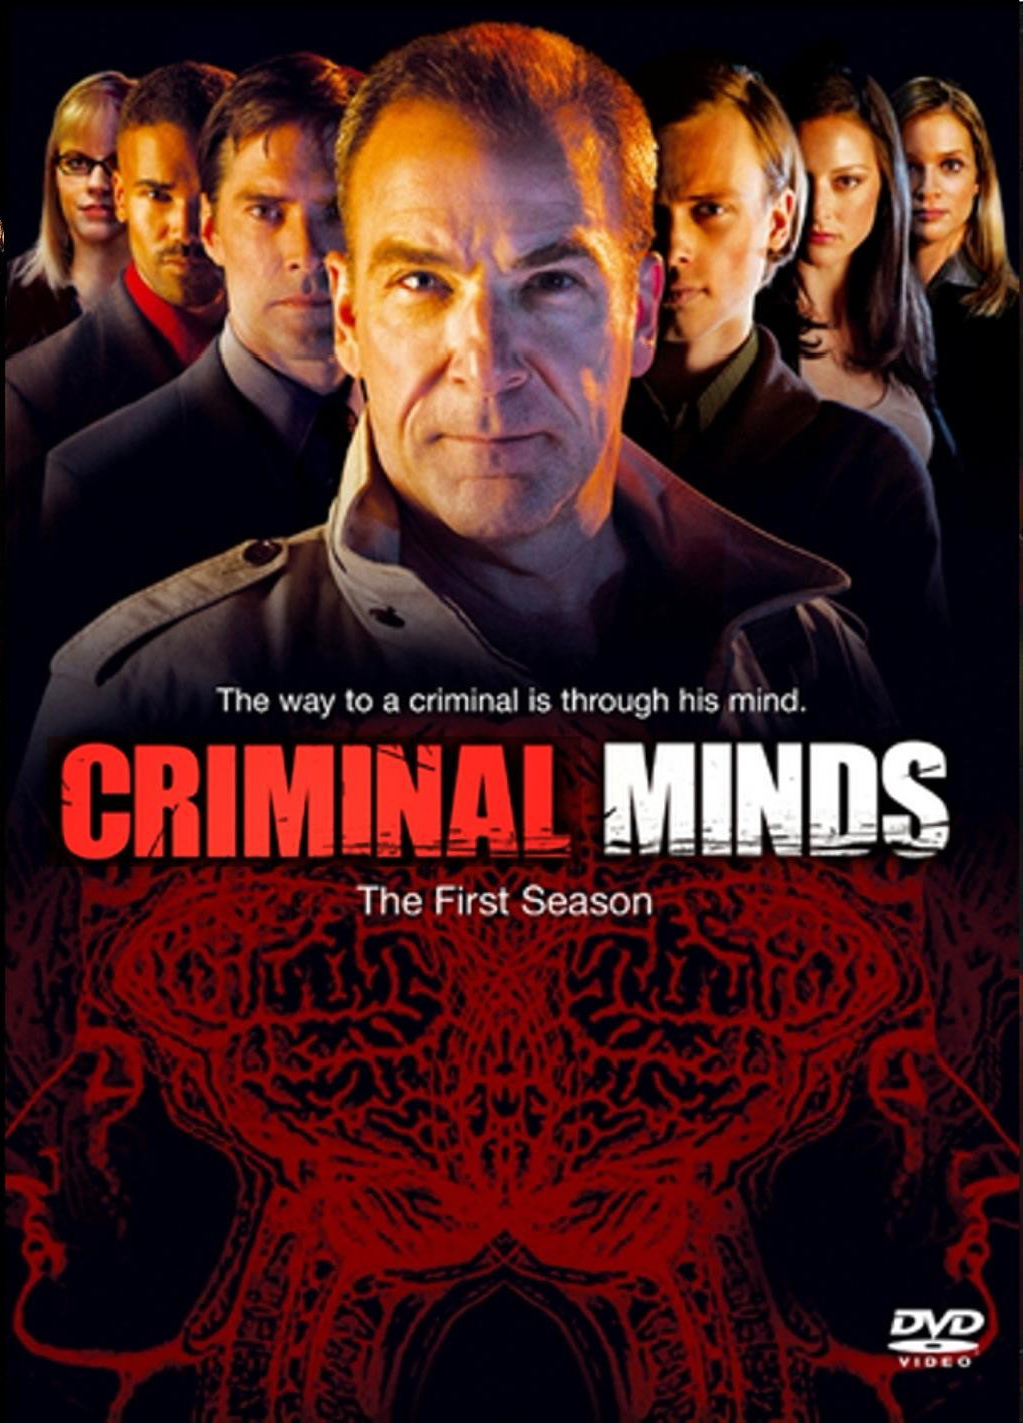 Criminal Minds season 1 - Wikipedia